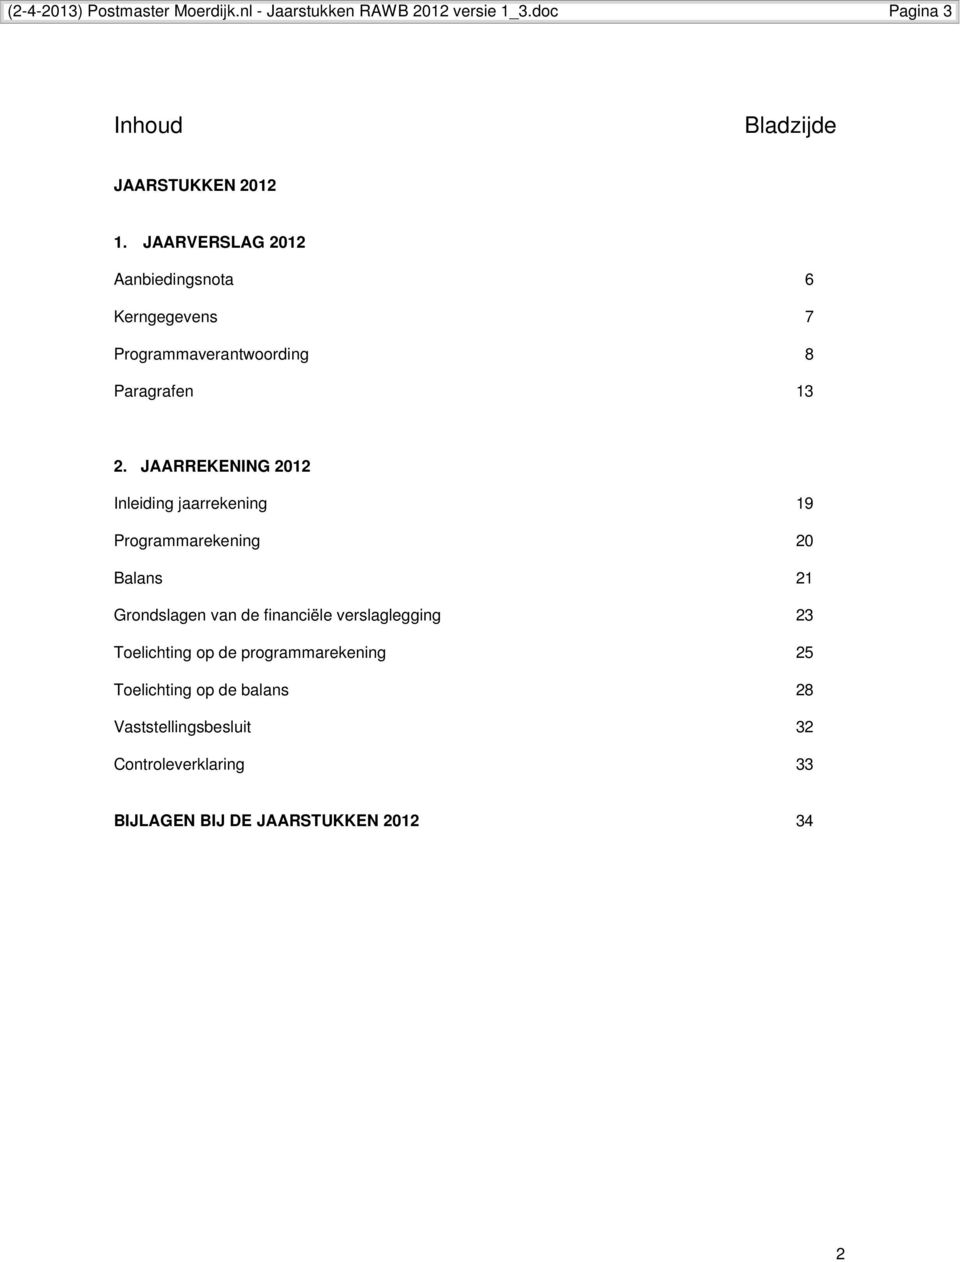 JAARREKENING 2012 Inleiding jaarrekening 19 Programmarekening 20 Balans 21 Grondslagen van de financiële verslaglegging